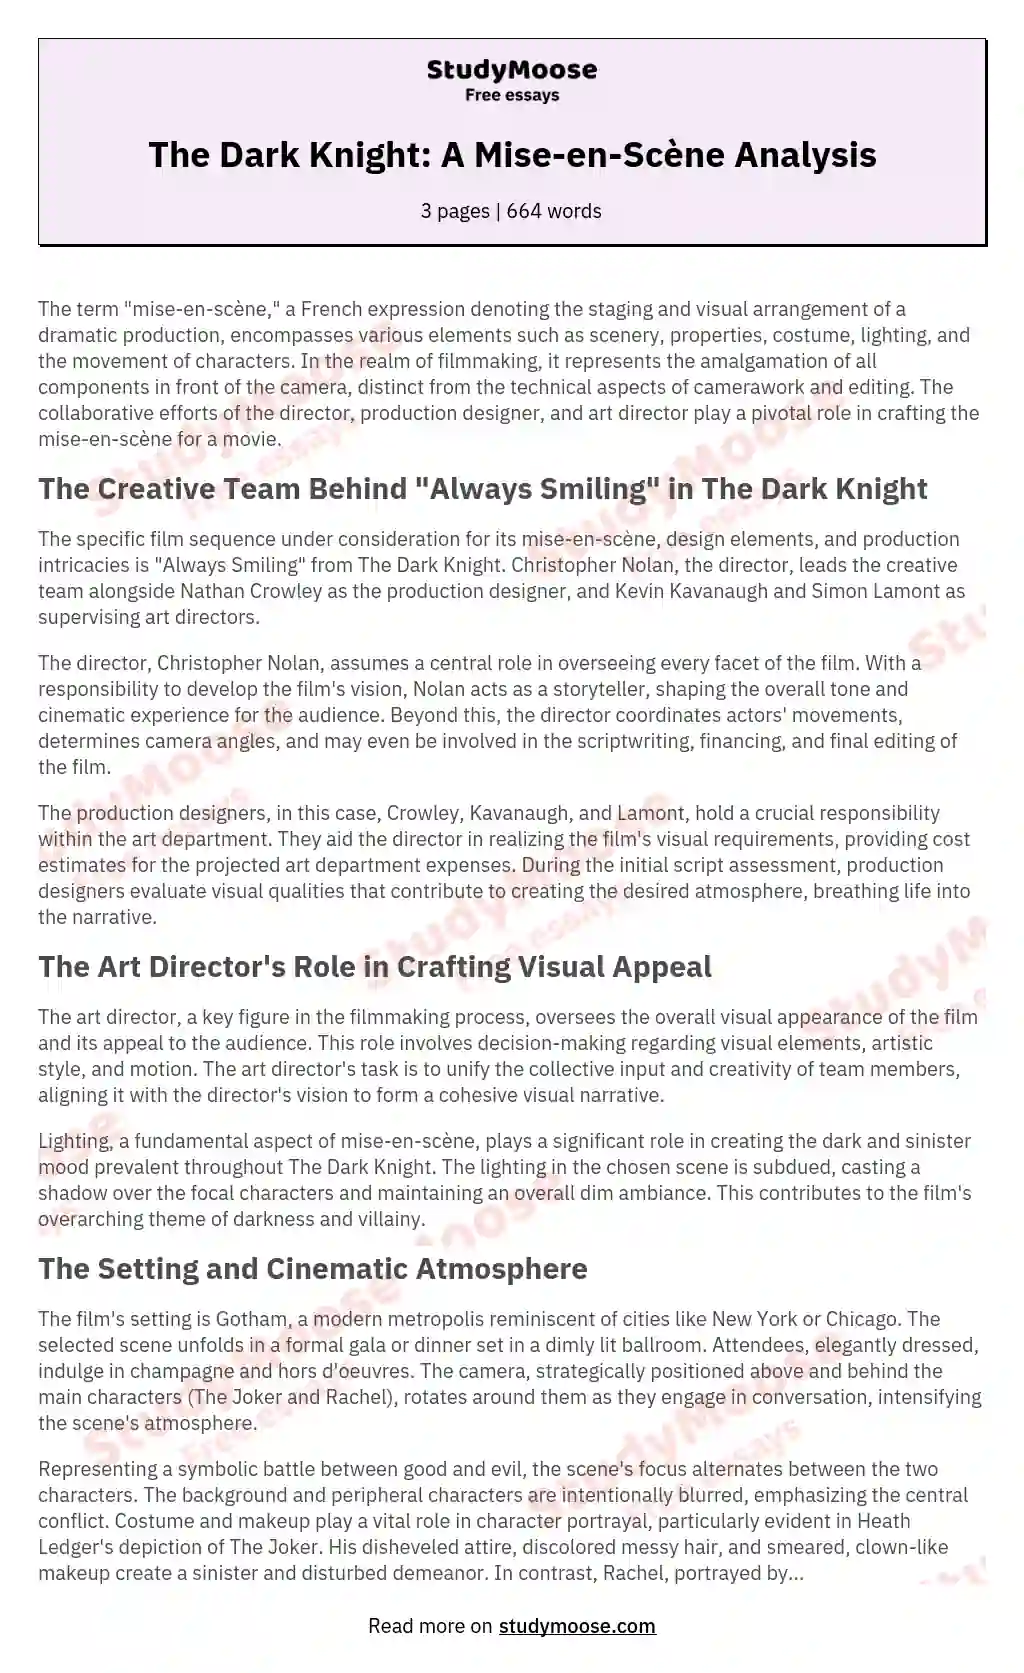 The Dark Knight: A Mise-en-Scène Analysis essay